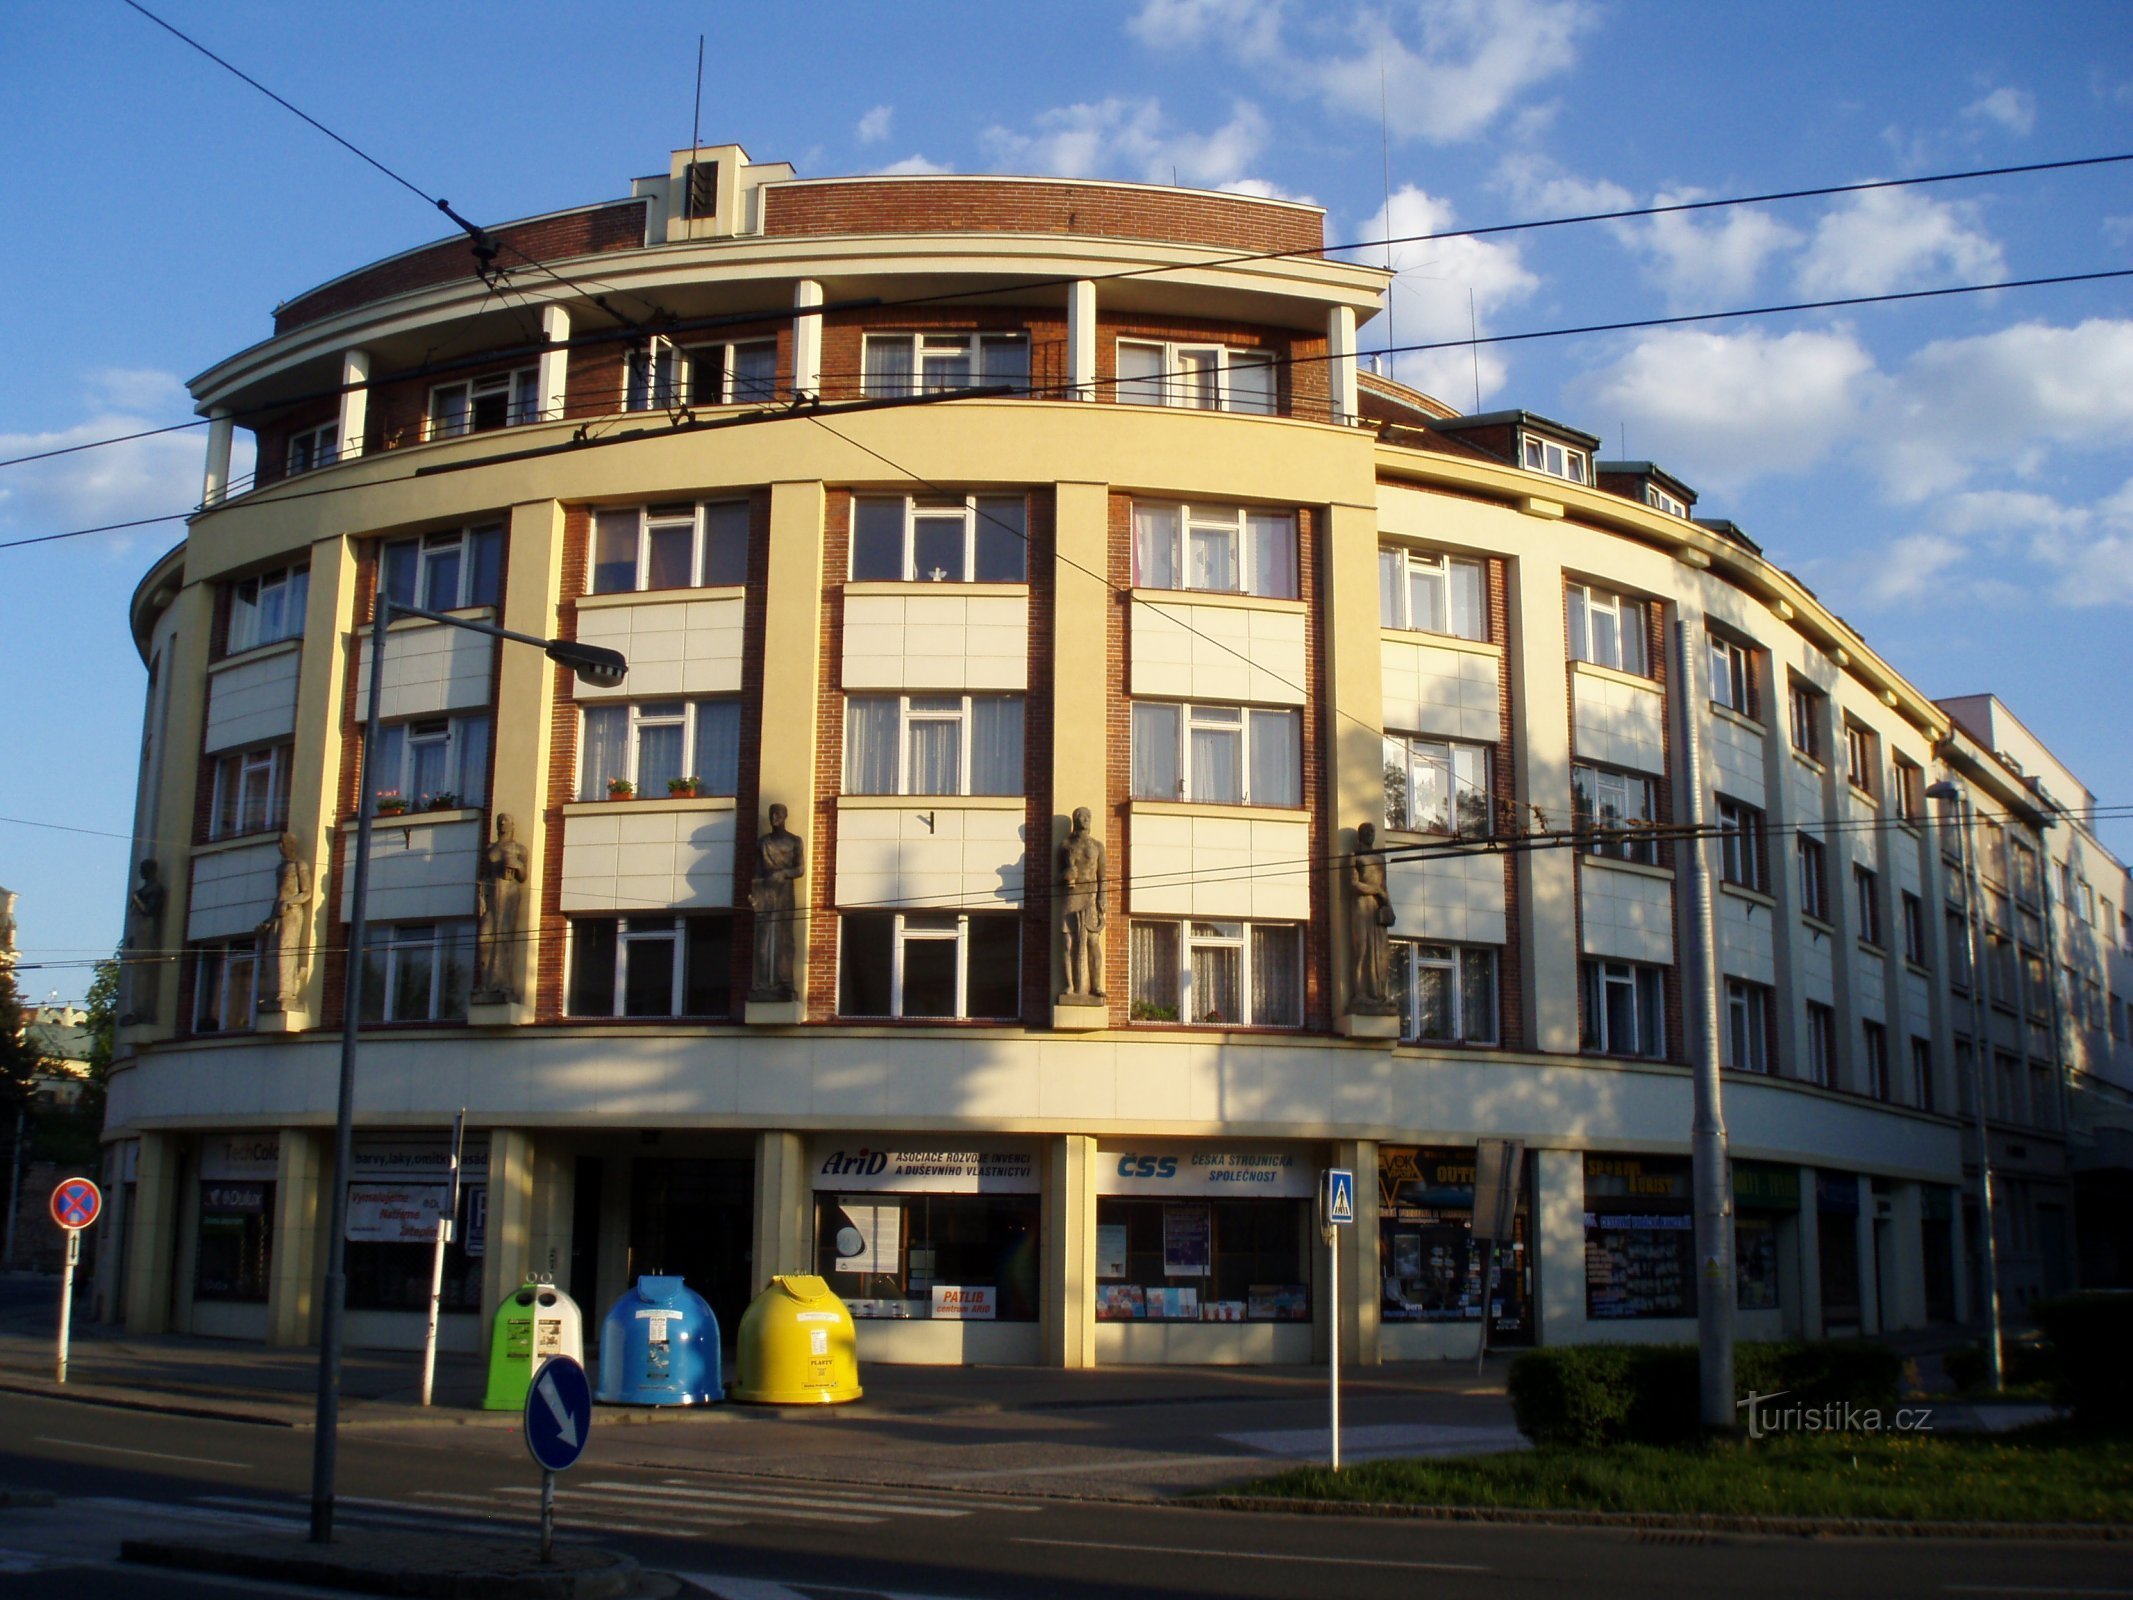 Первая чешская компания взаимного страхования (Градец Кралове, 1.5.2012 мая XNUMX г.)